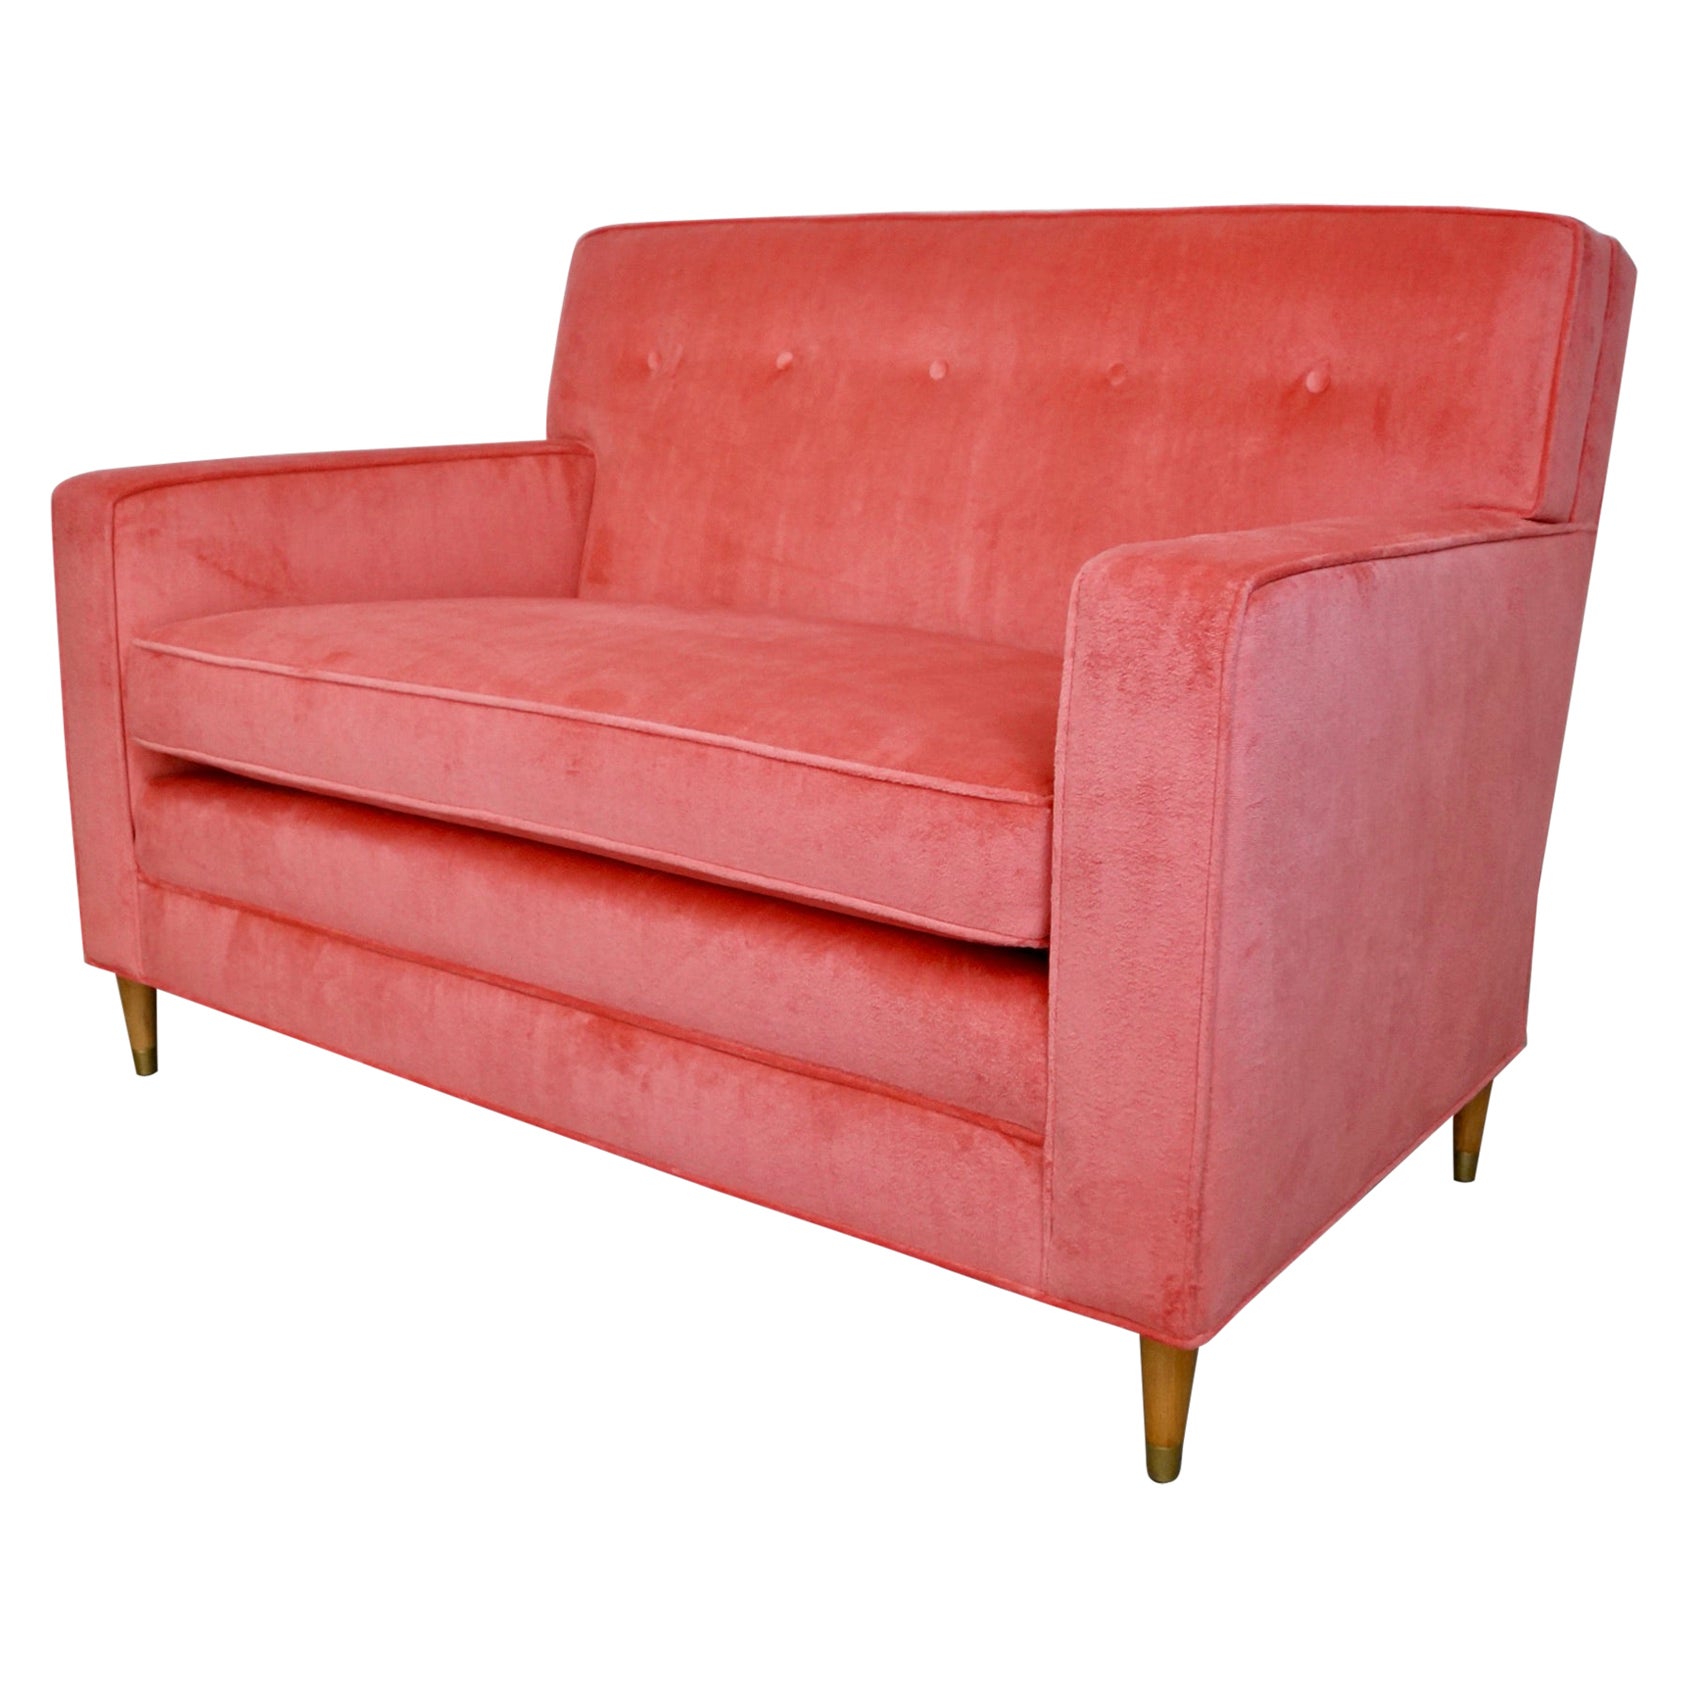 1950's Mid-Century Modern Loveseat Sofa Reupholstered in Pink Velvet For Sale